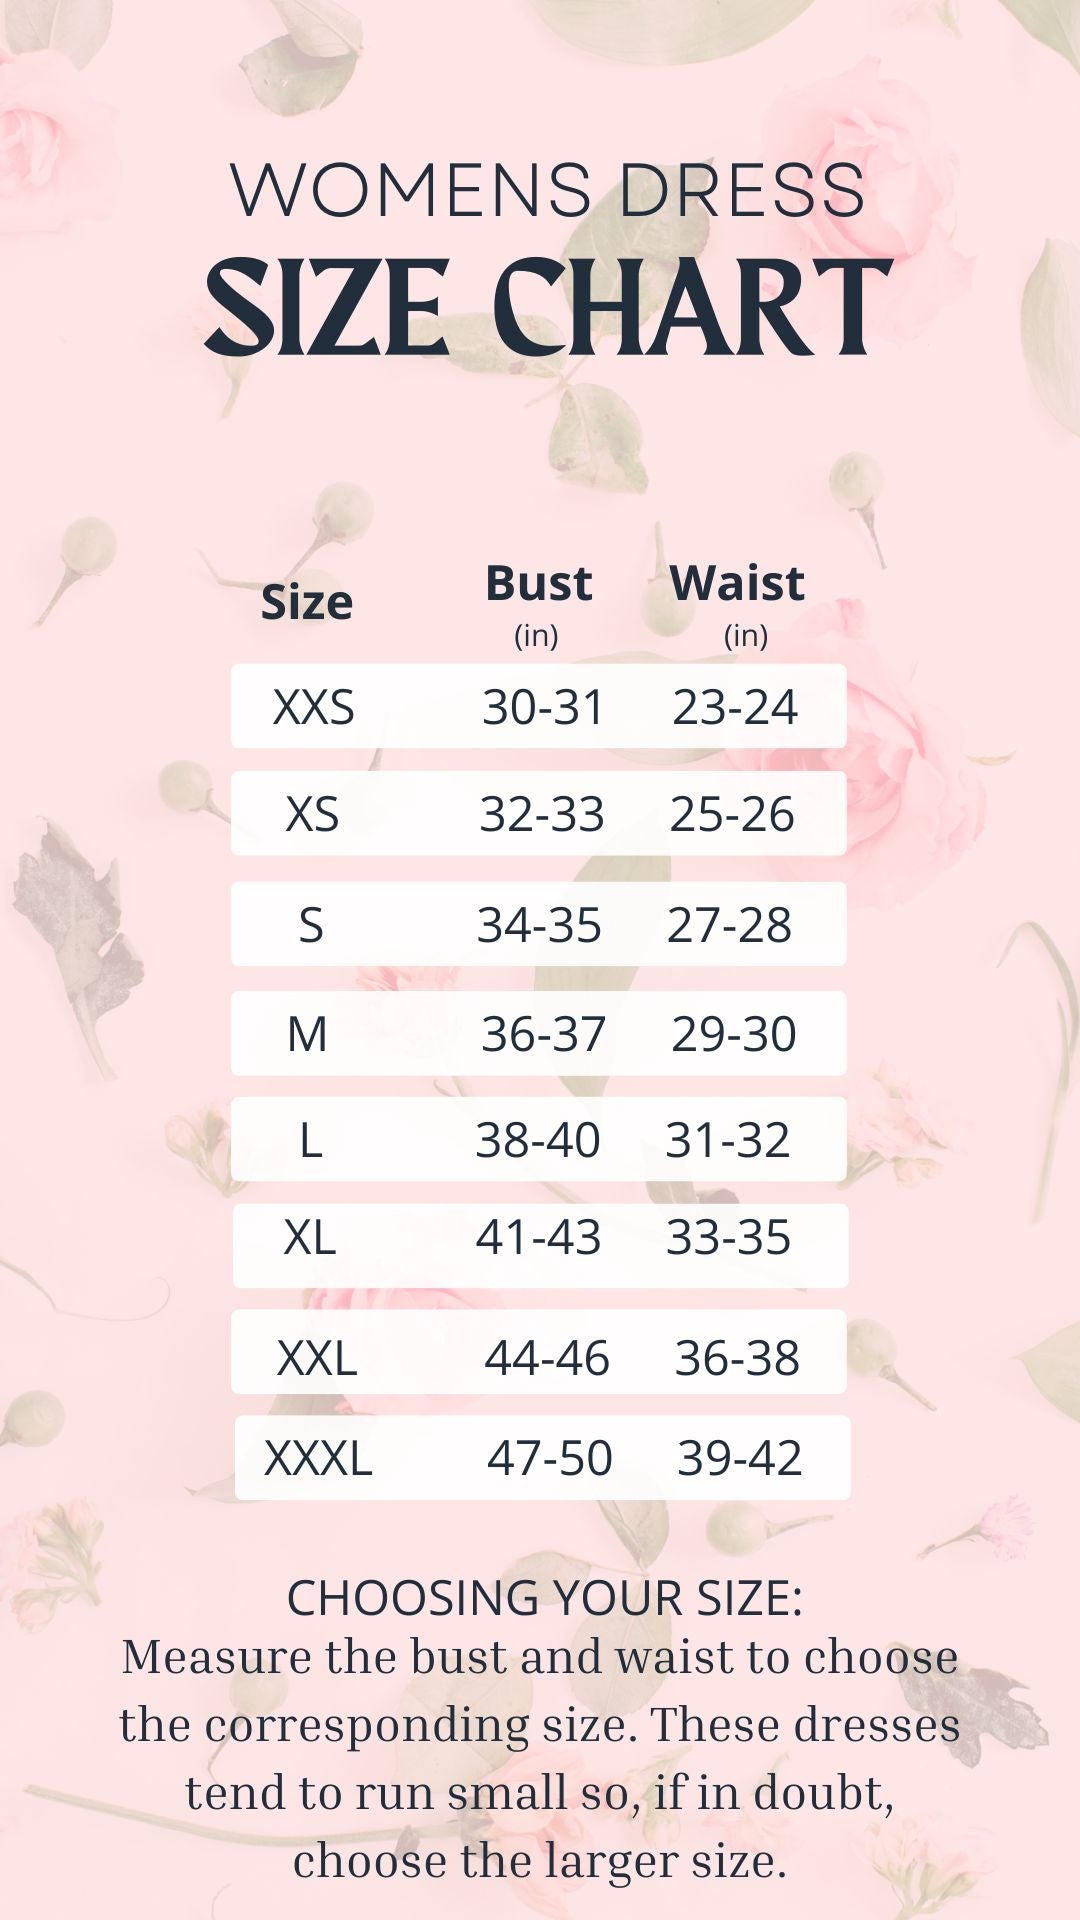 Clothing sizes - Wikipedia